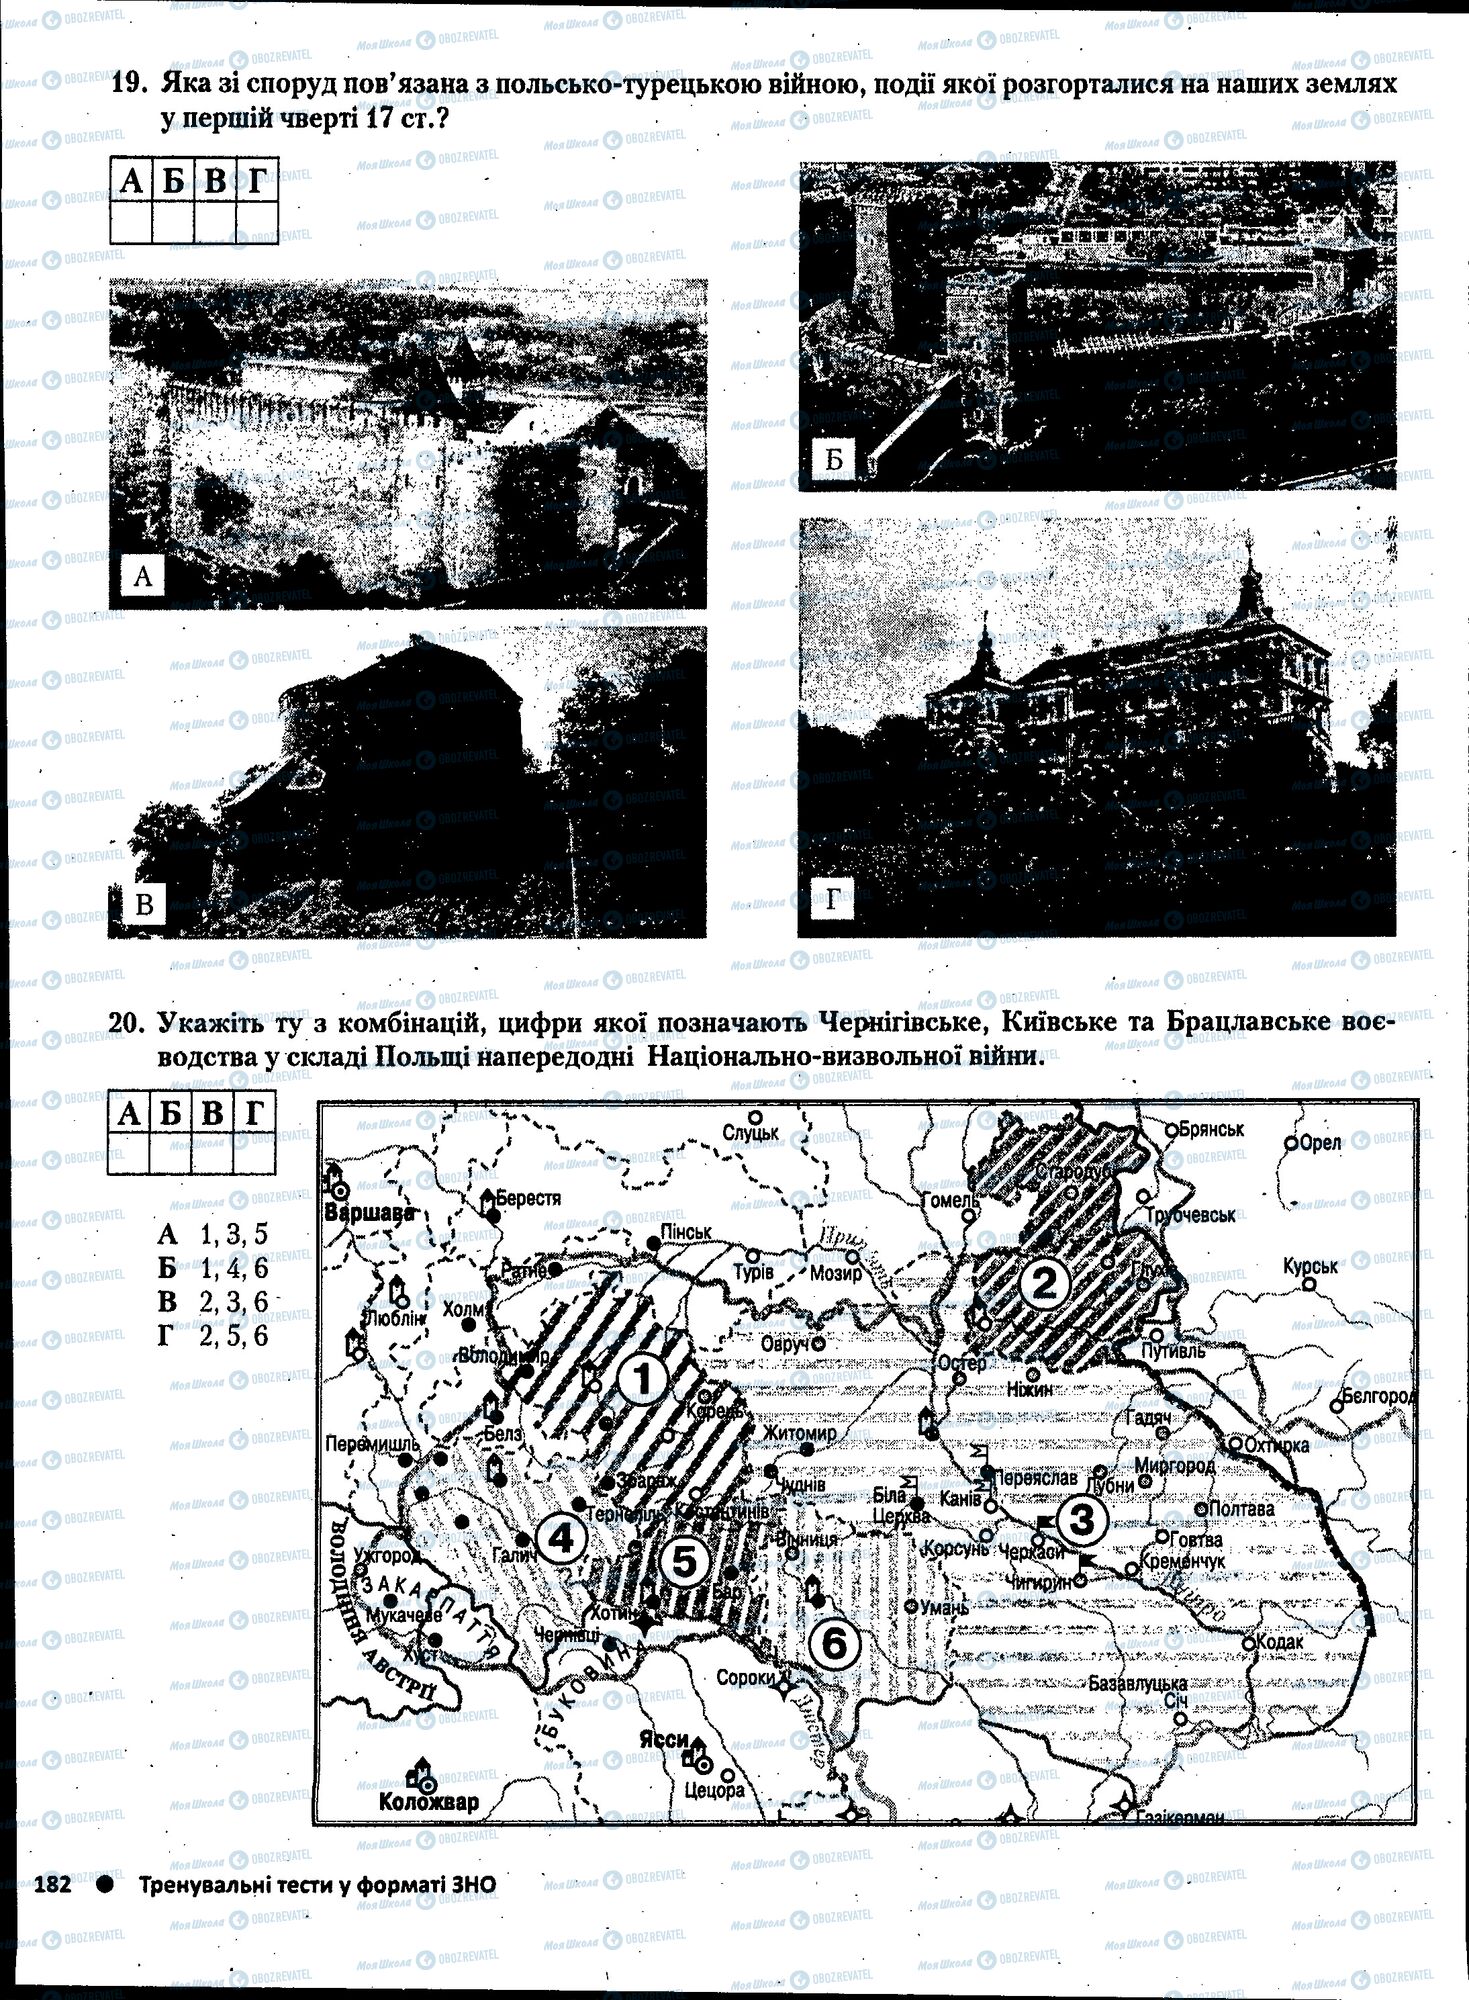 ЗНО История Украины 11 класс страница 182